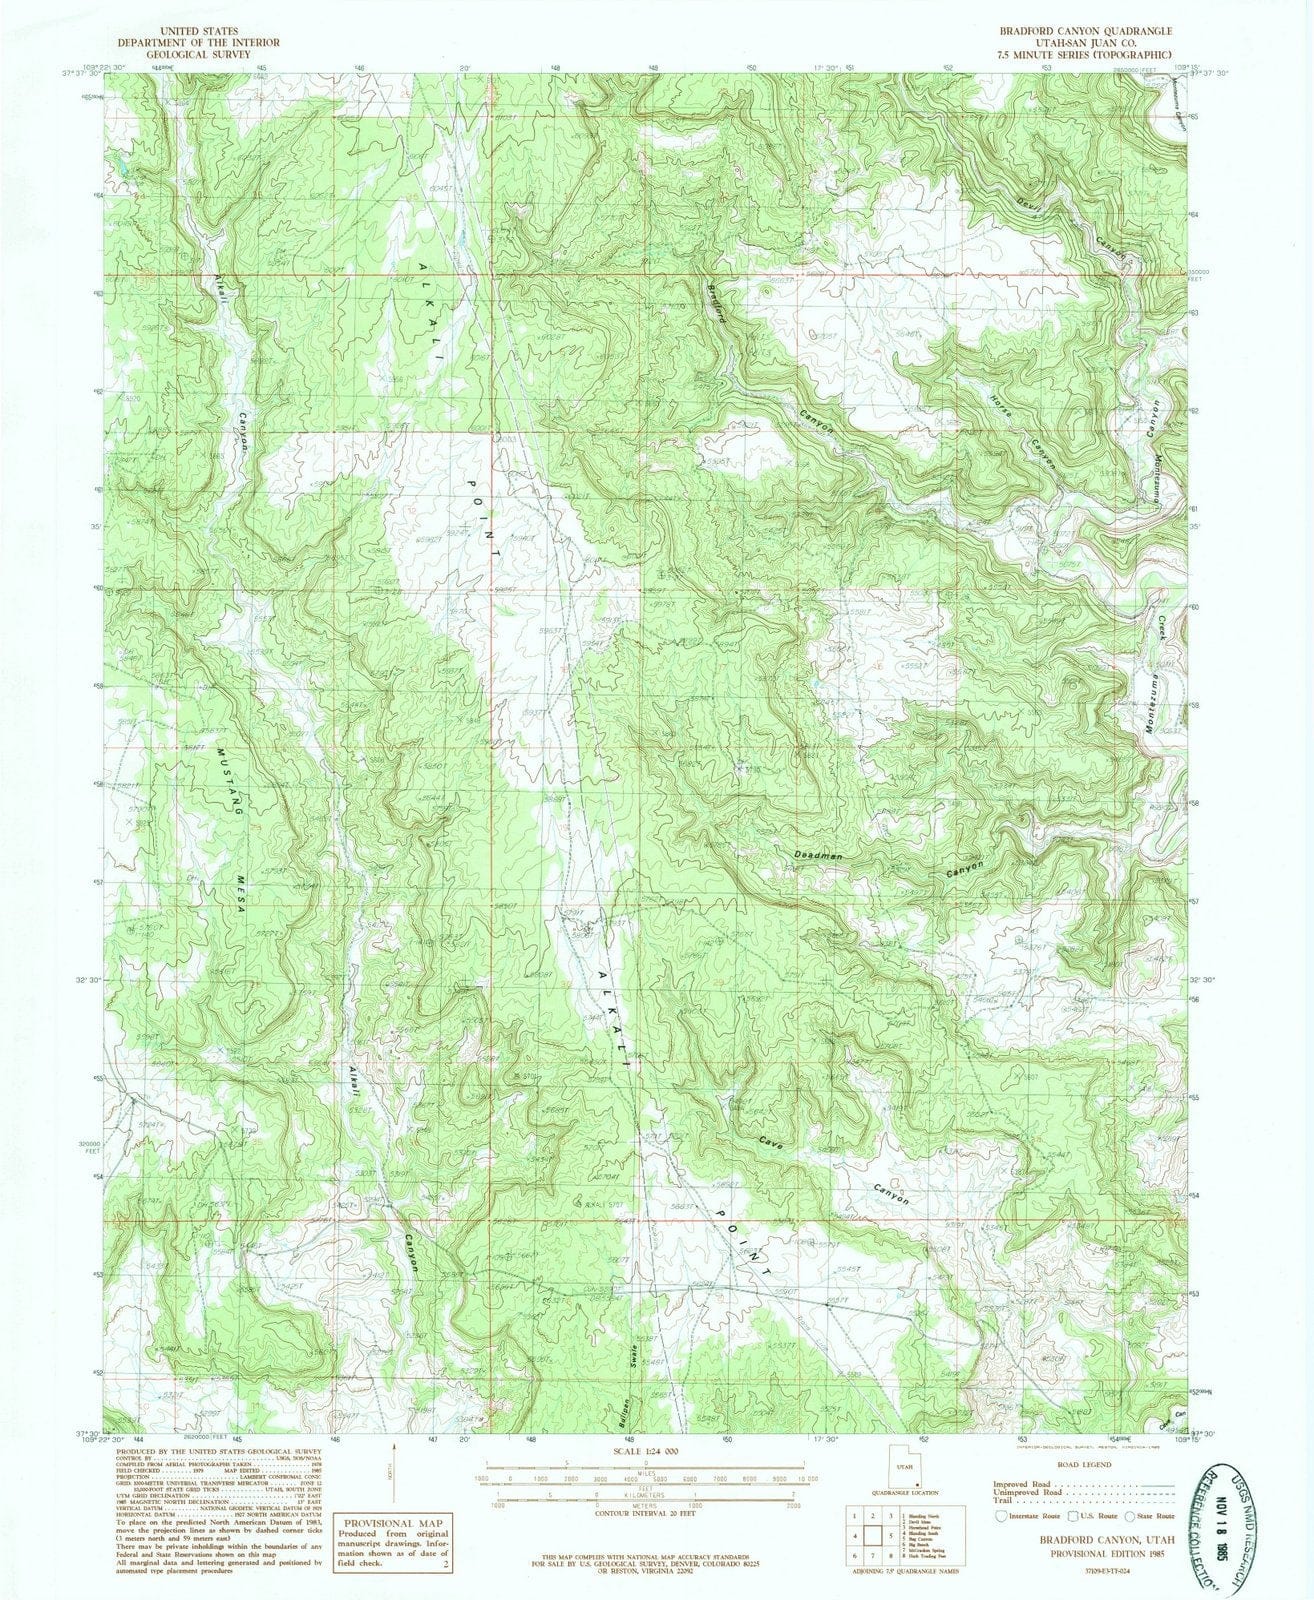 1985 Bradford Canyon, UT - Utah - USGS Topographic Map